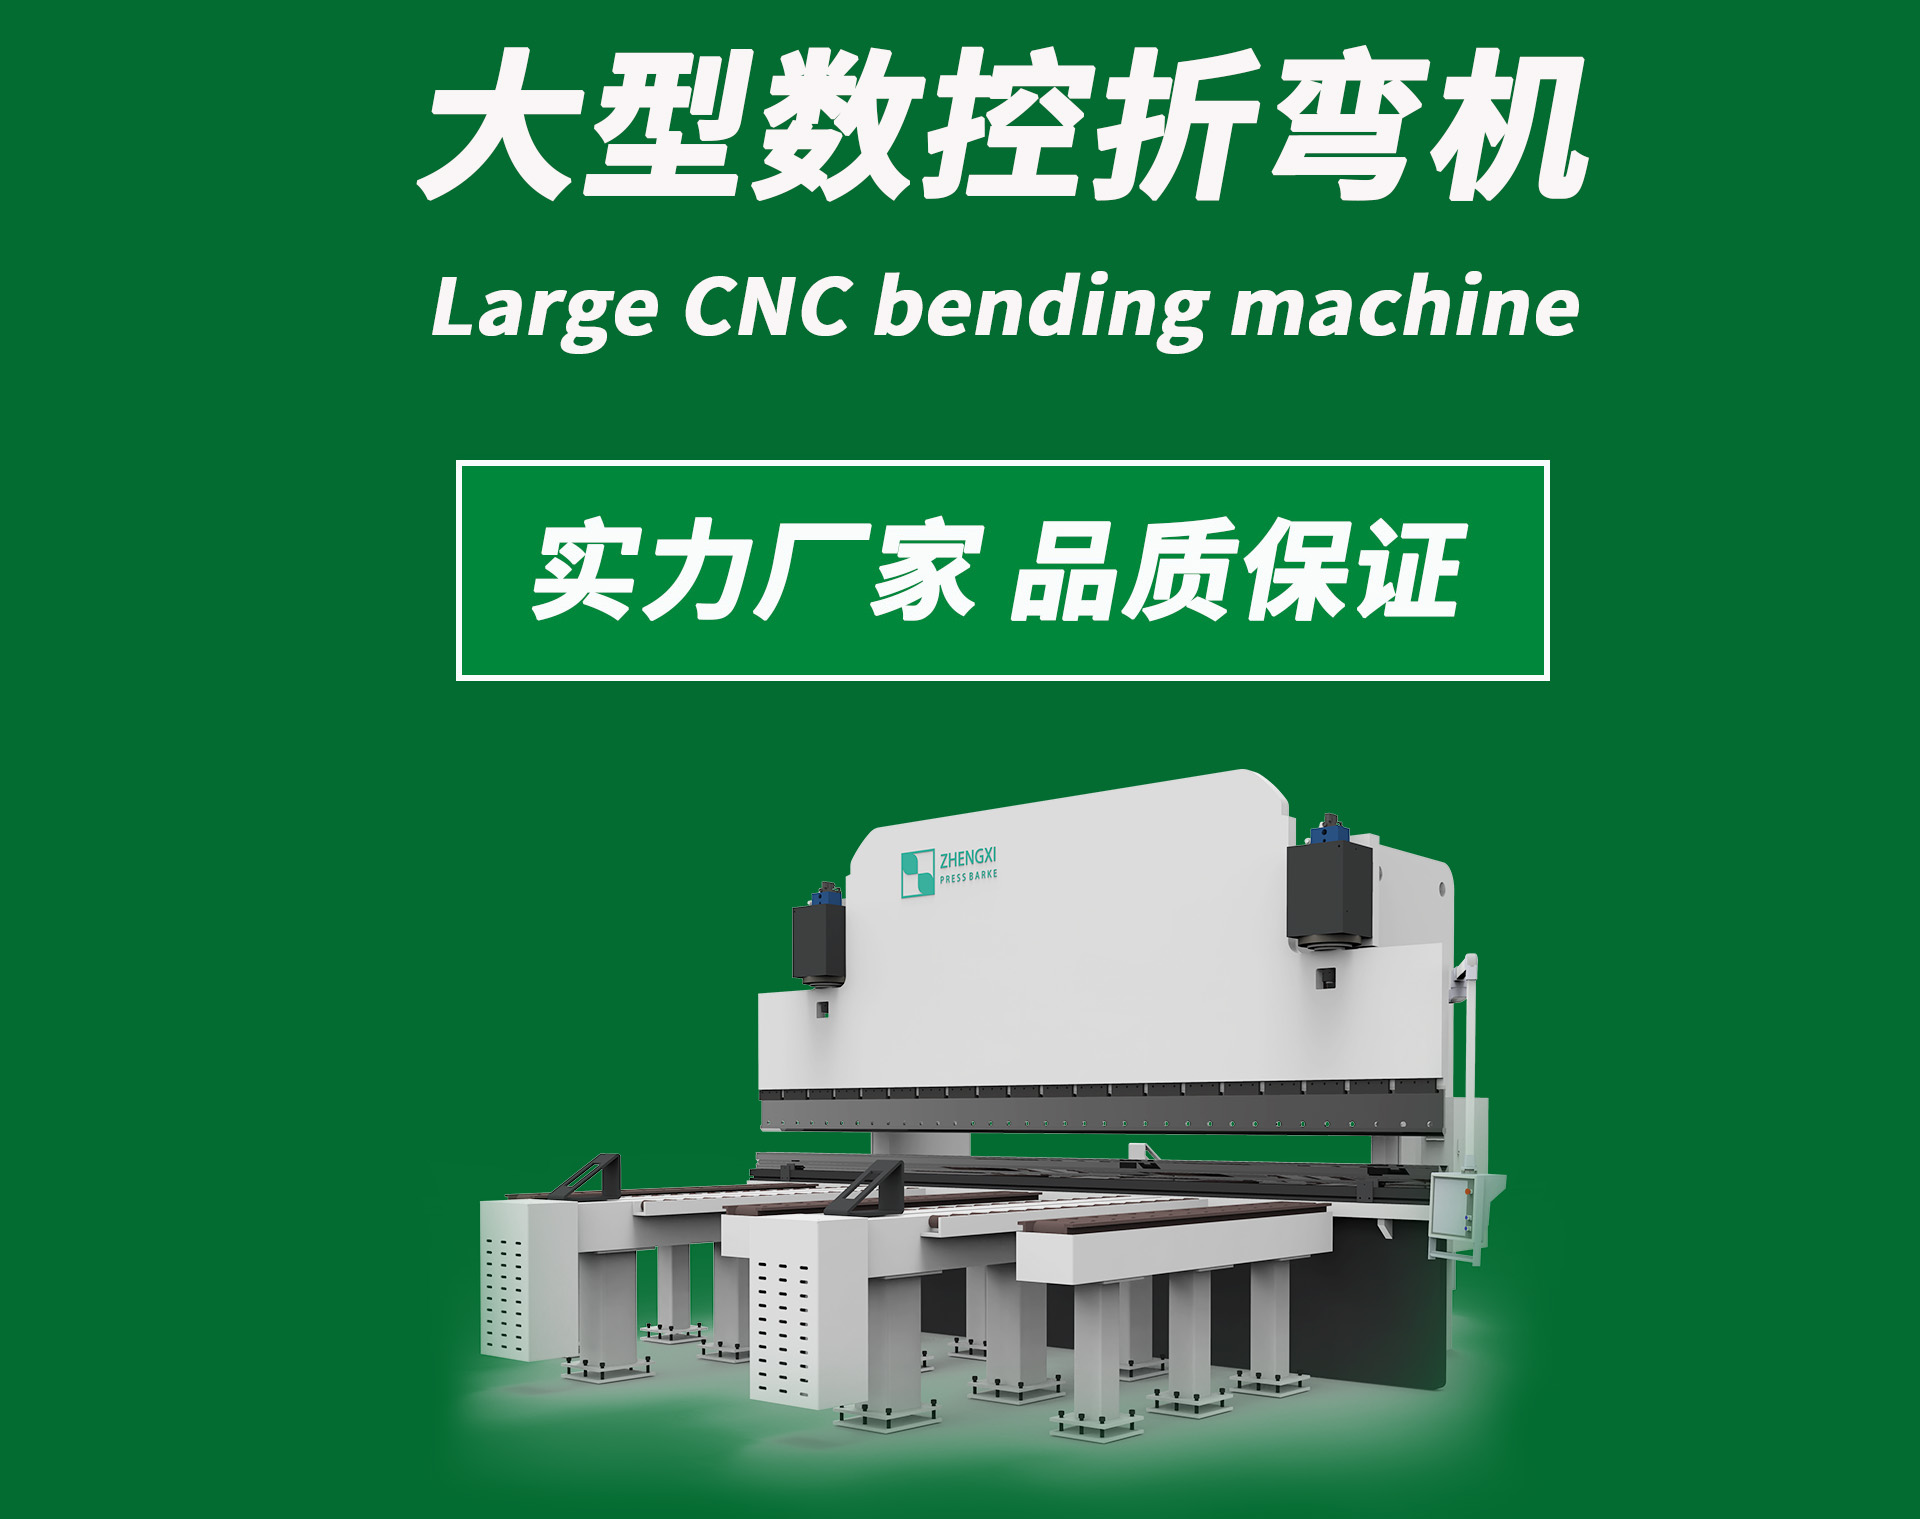 首版Large CNC bending machine.jpg